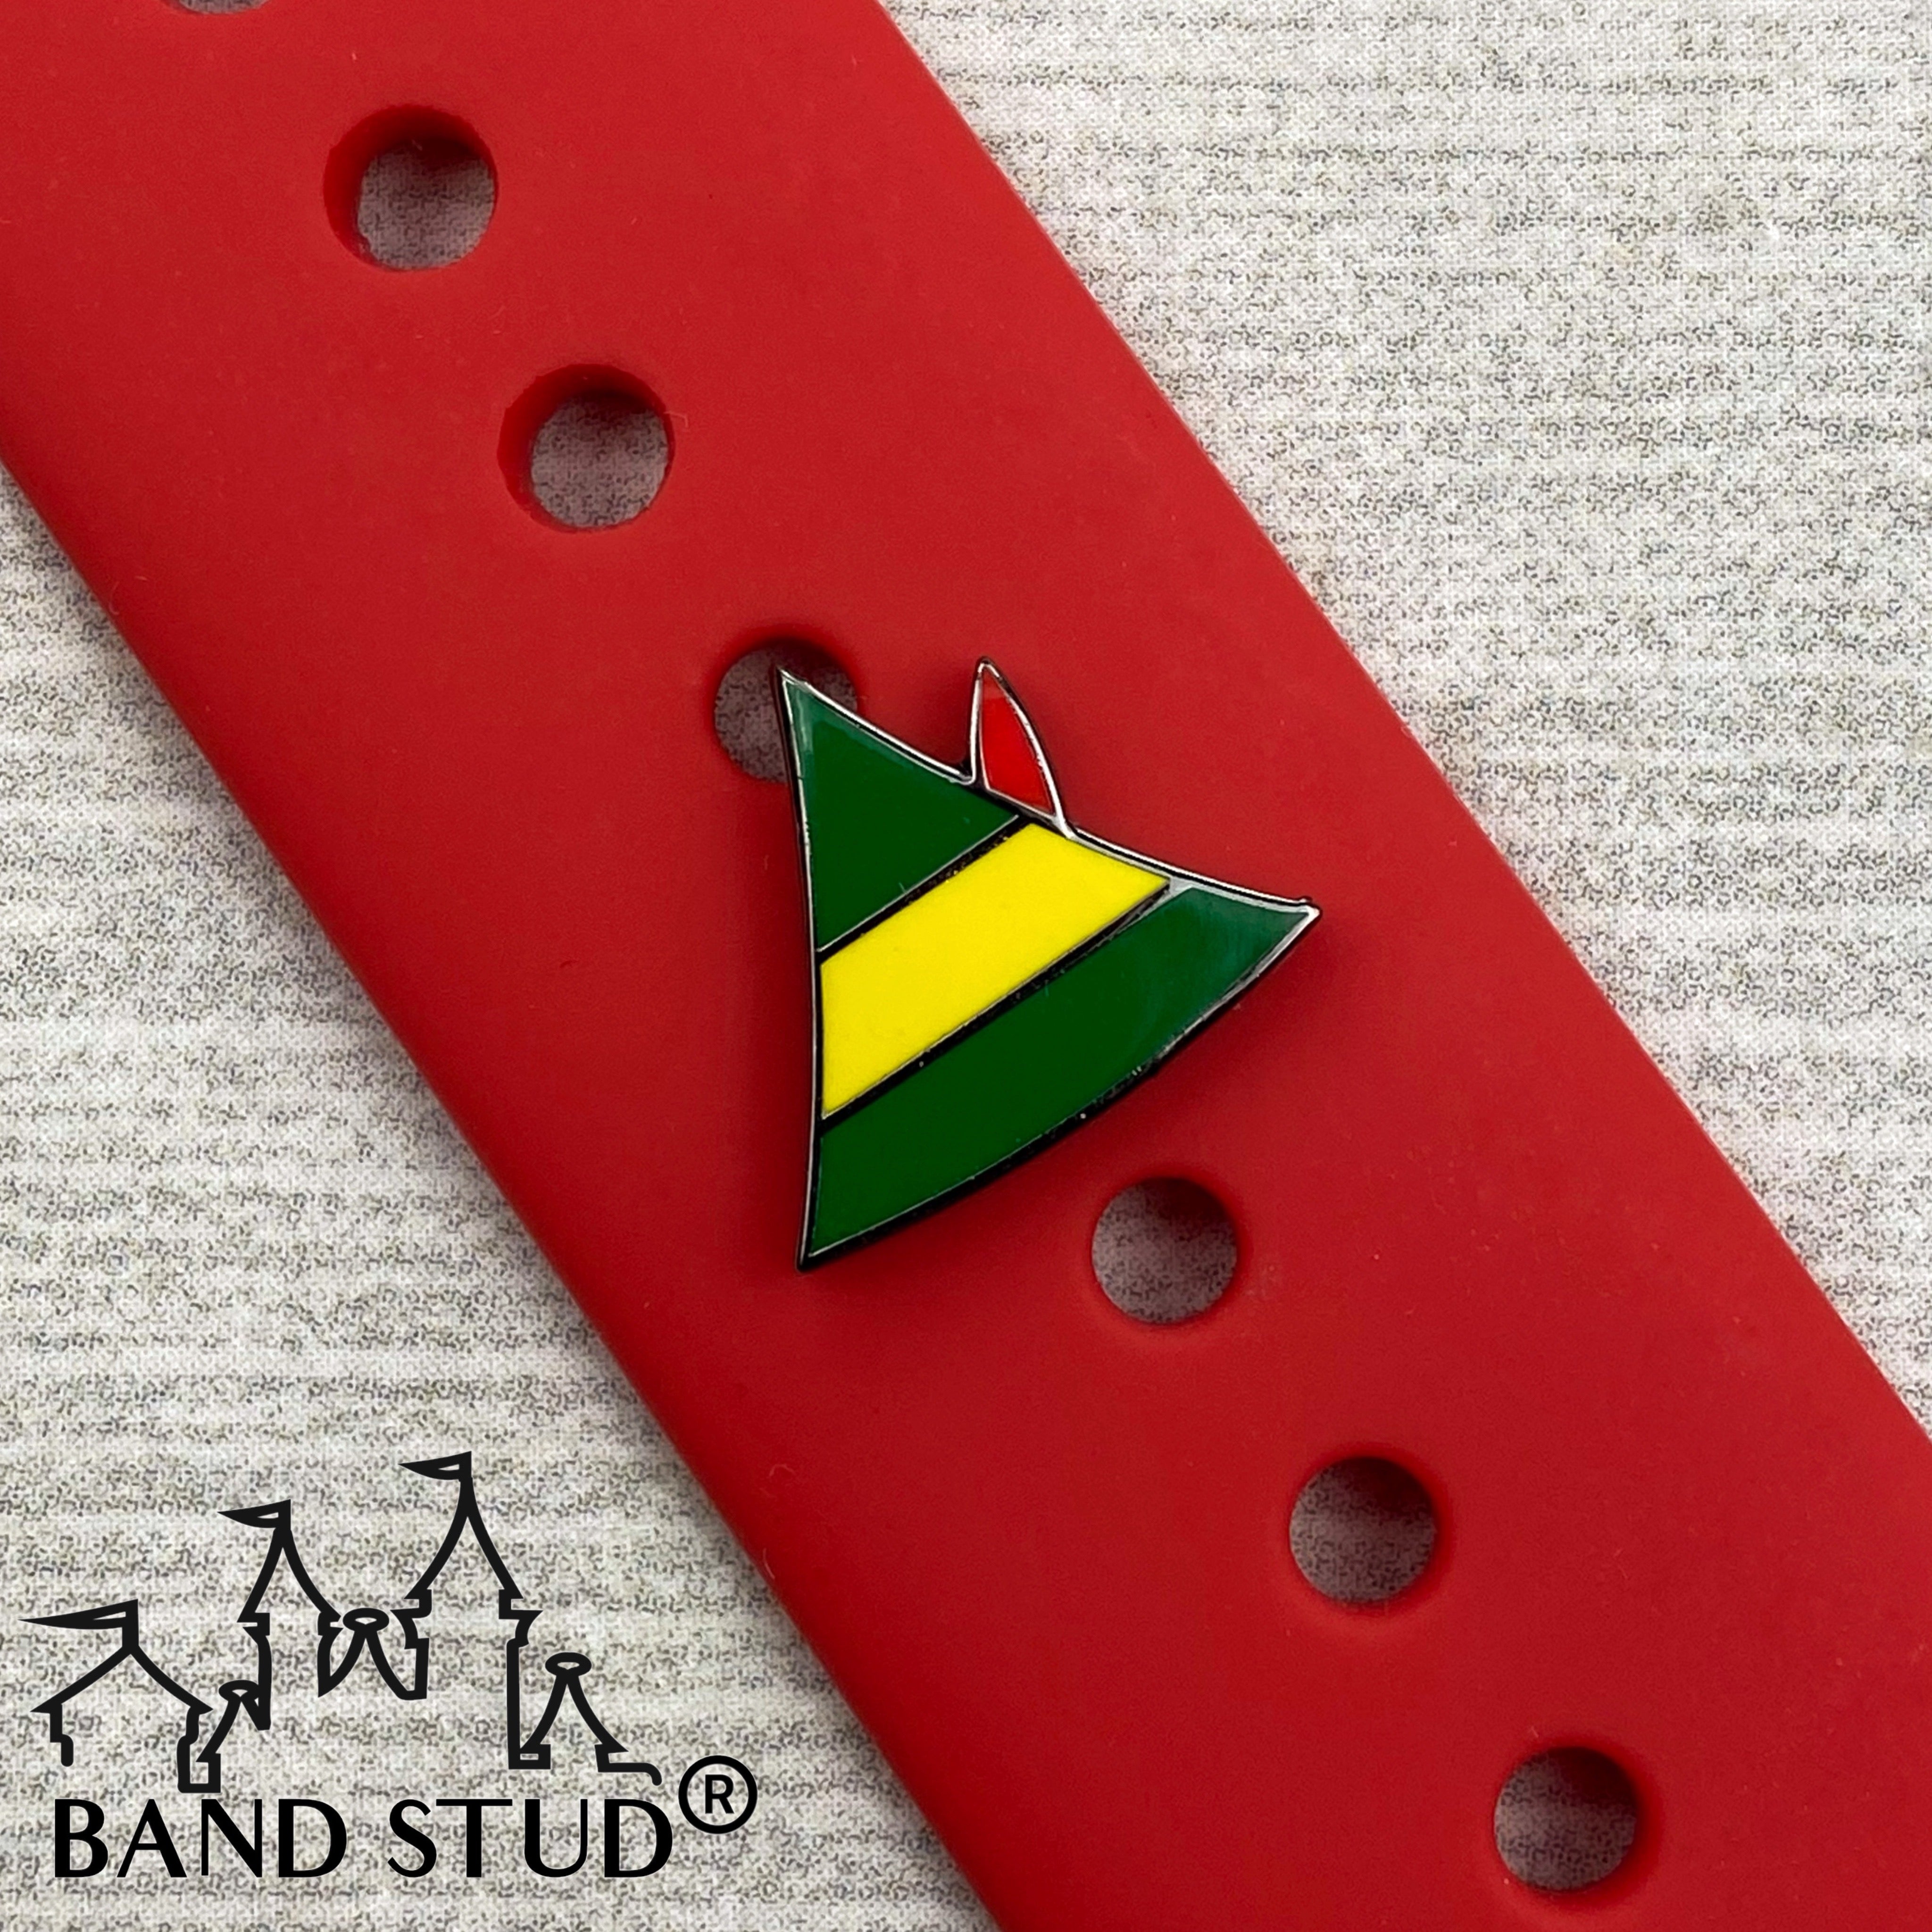 Band Stud® - Christmas Collection - Buddy the Elf